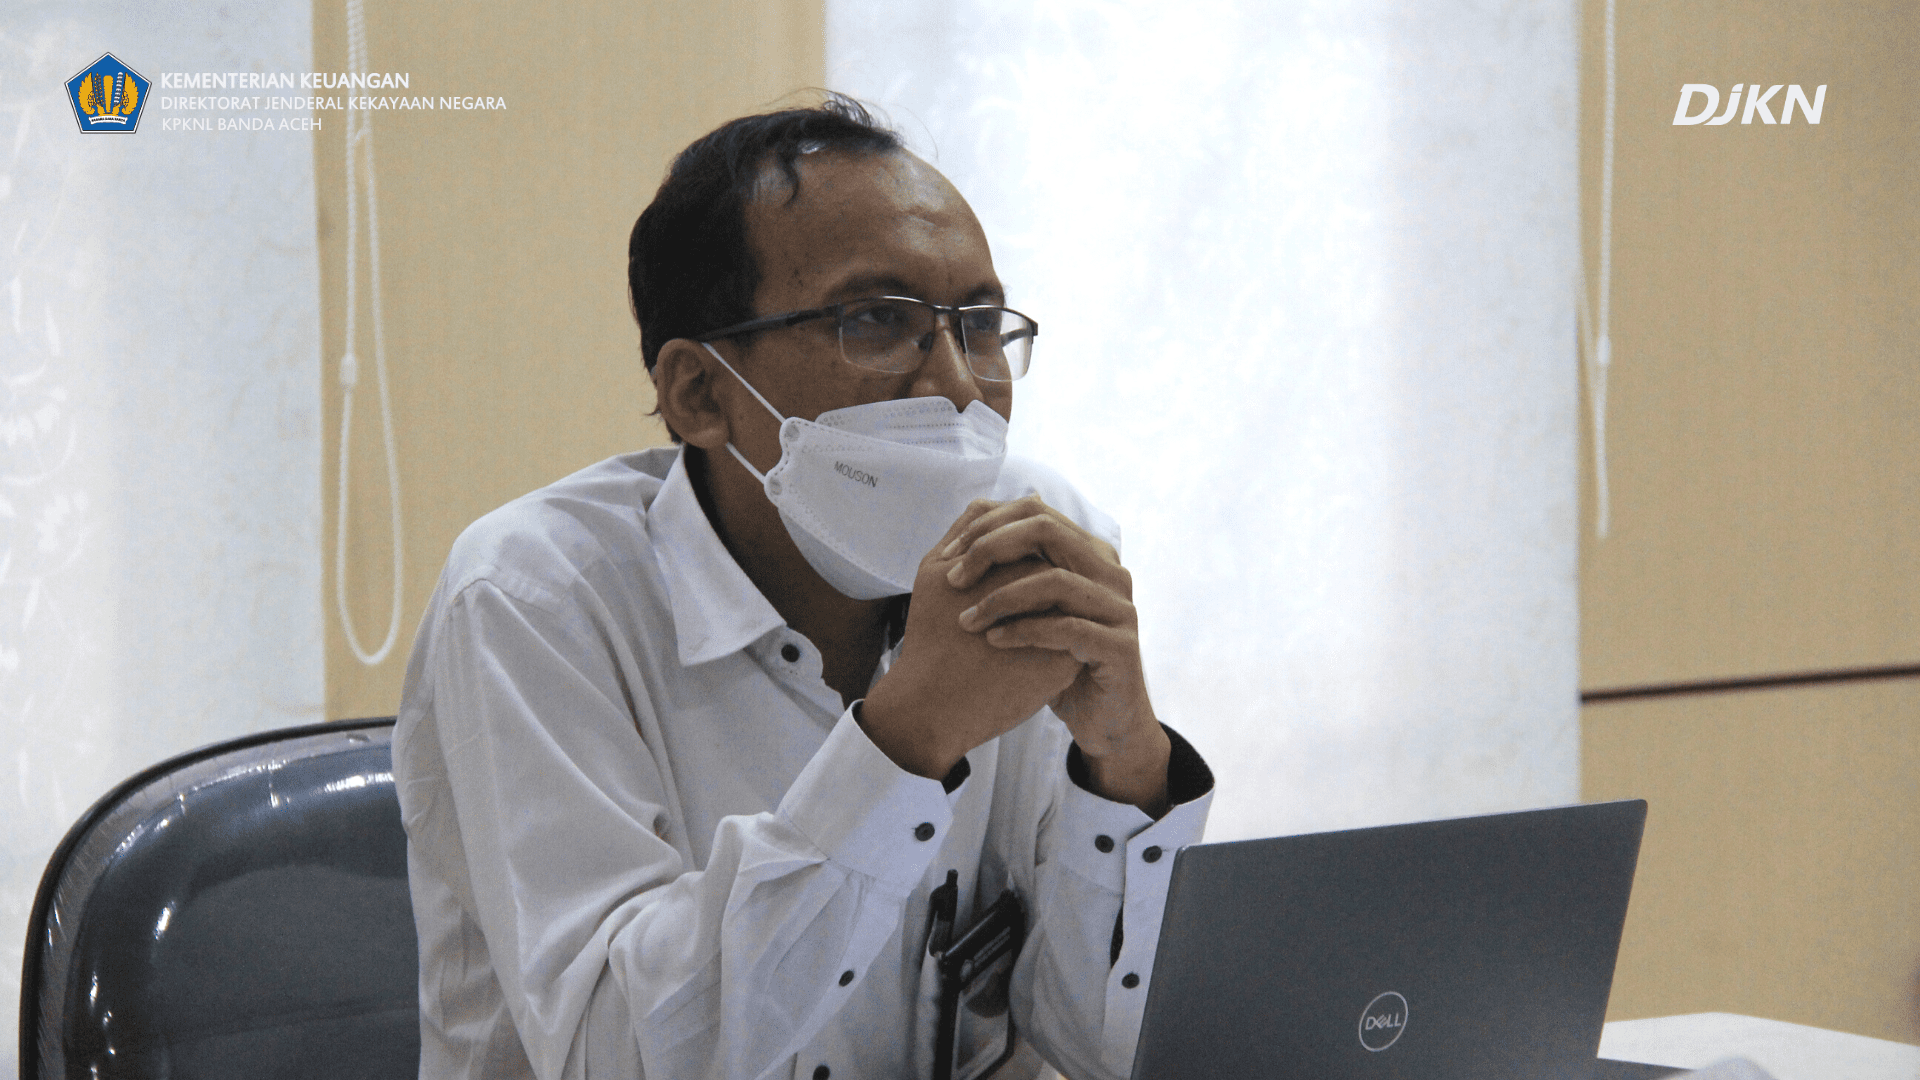 FGD Pejabat Administartor Triwulan III Tahun 2022 KPKNL Banda Aceh: Green Investment/Economy dan Perencanaan Keuangan